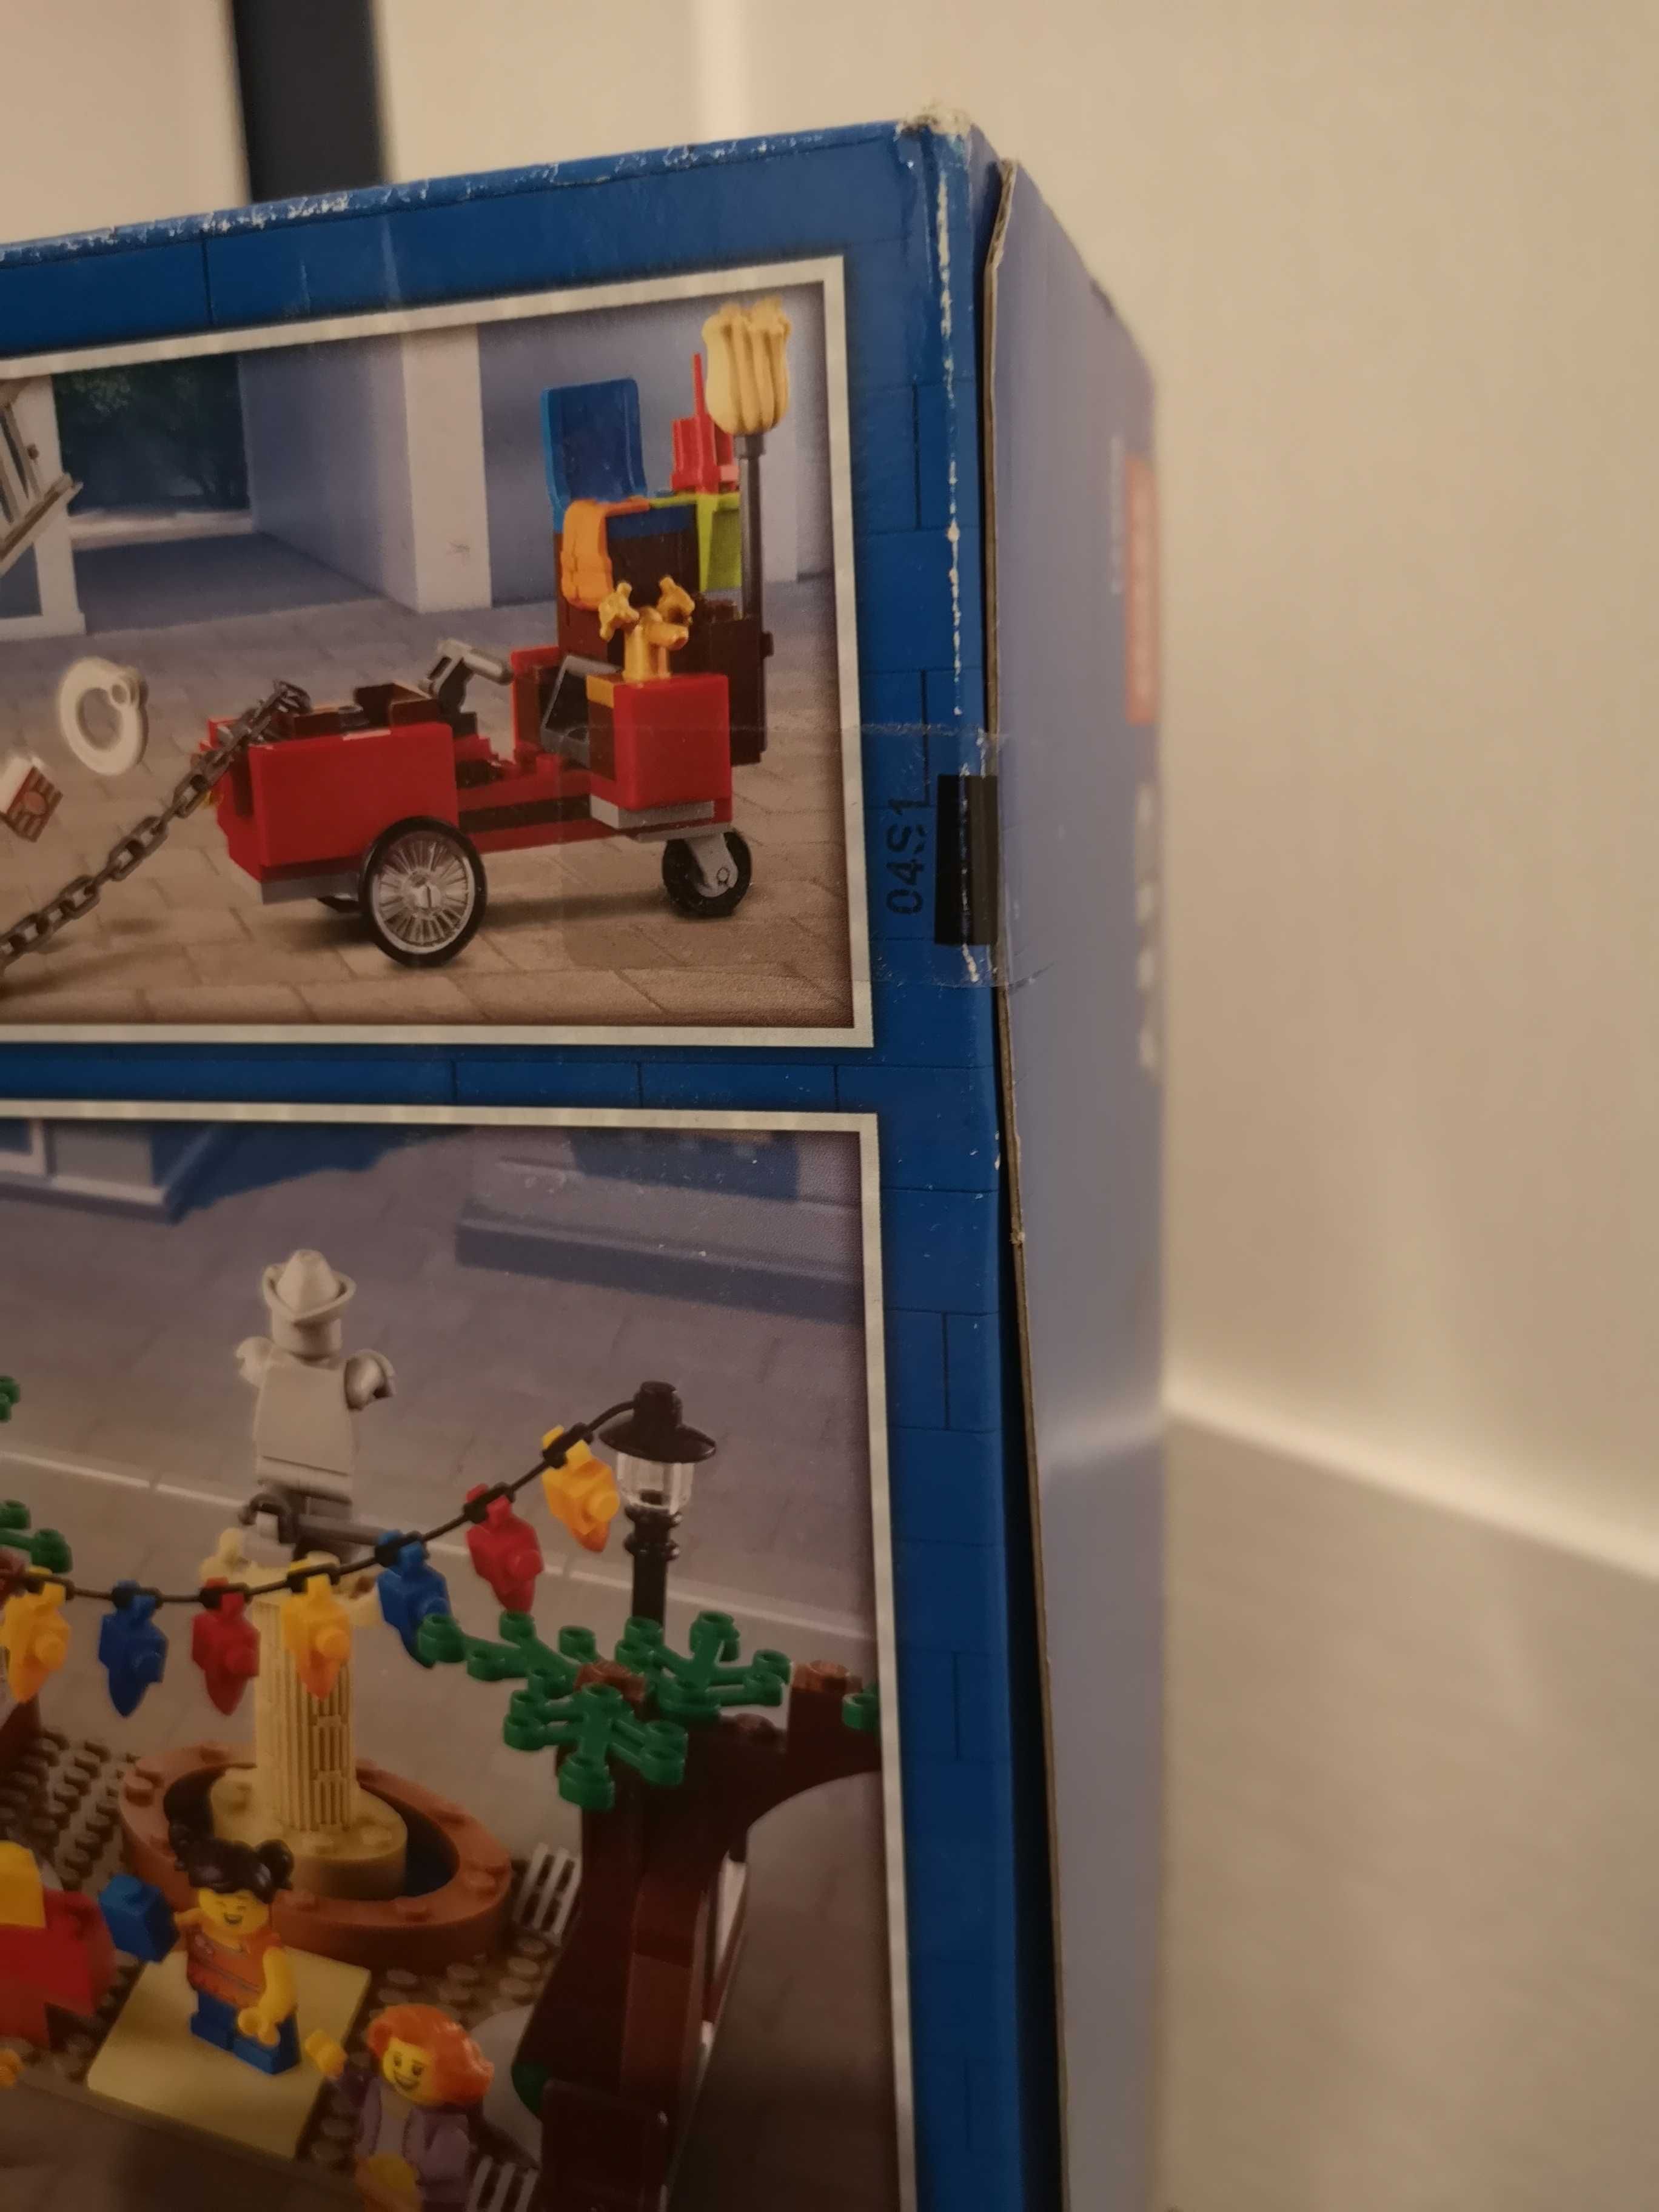 Lego City - 60271 - Rynek